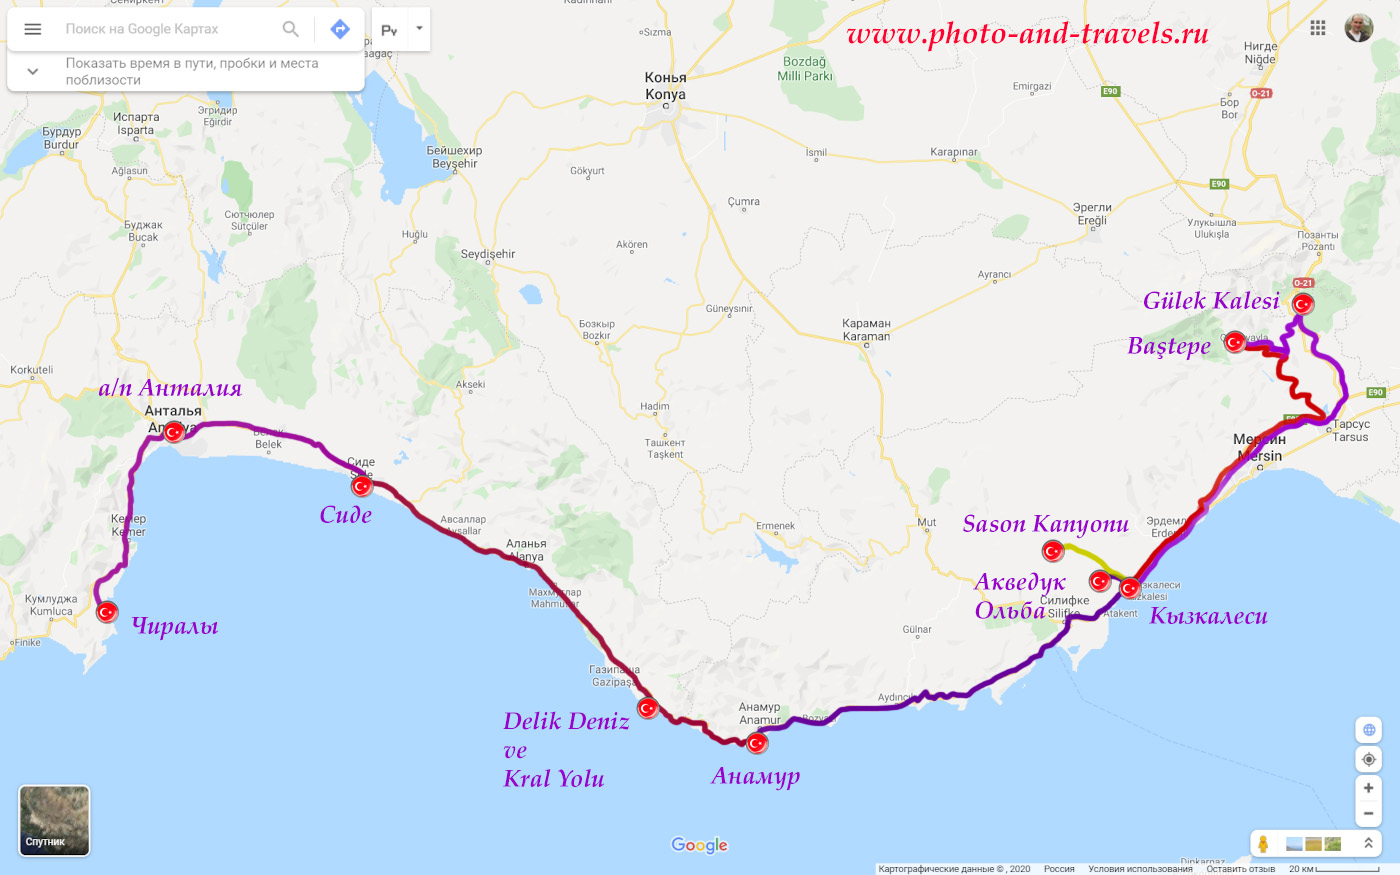 3. Карта маршрута автомобильного путешествия из Анталии. Мы отдыхали в Чиралы, а затем поехали в Сиде, Анамур и Кызкалеси.